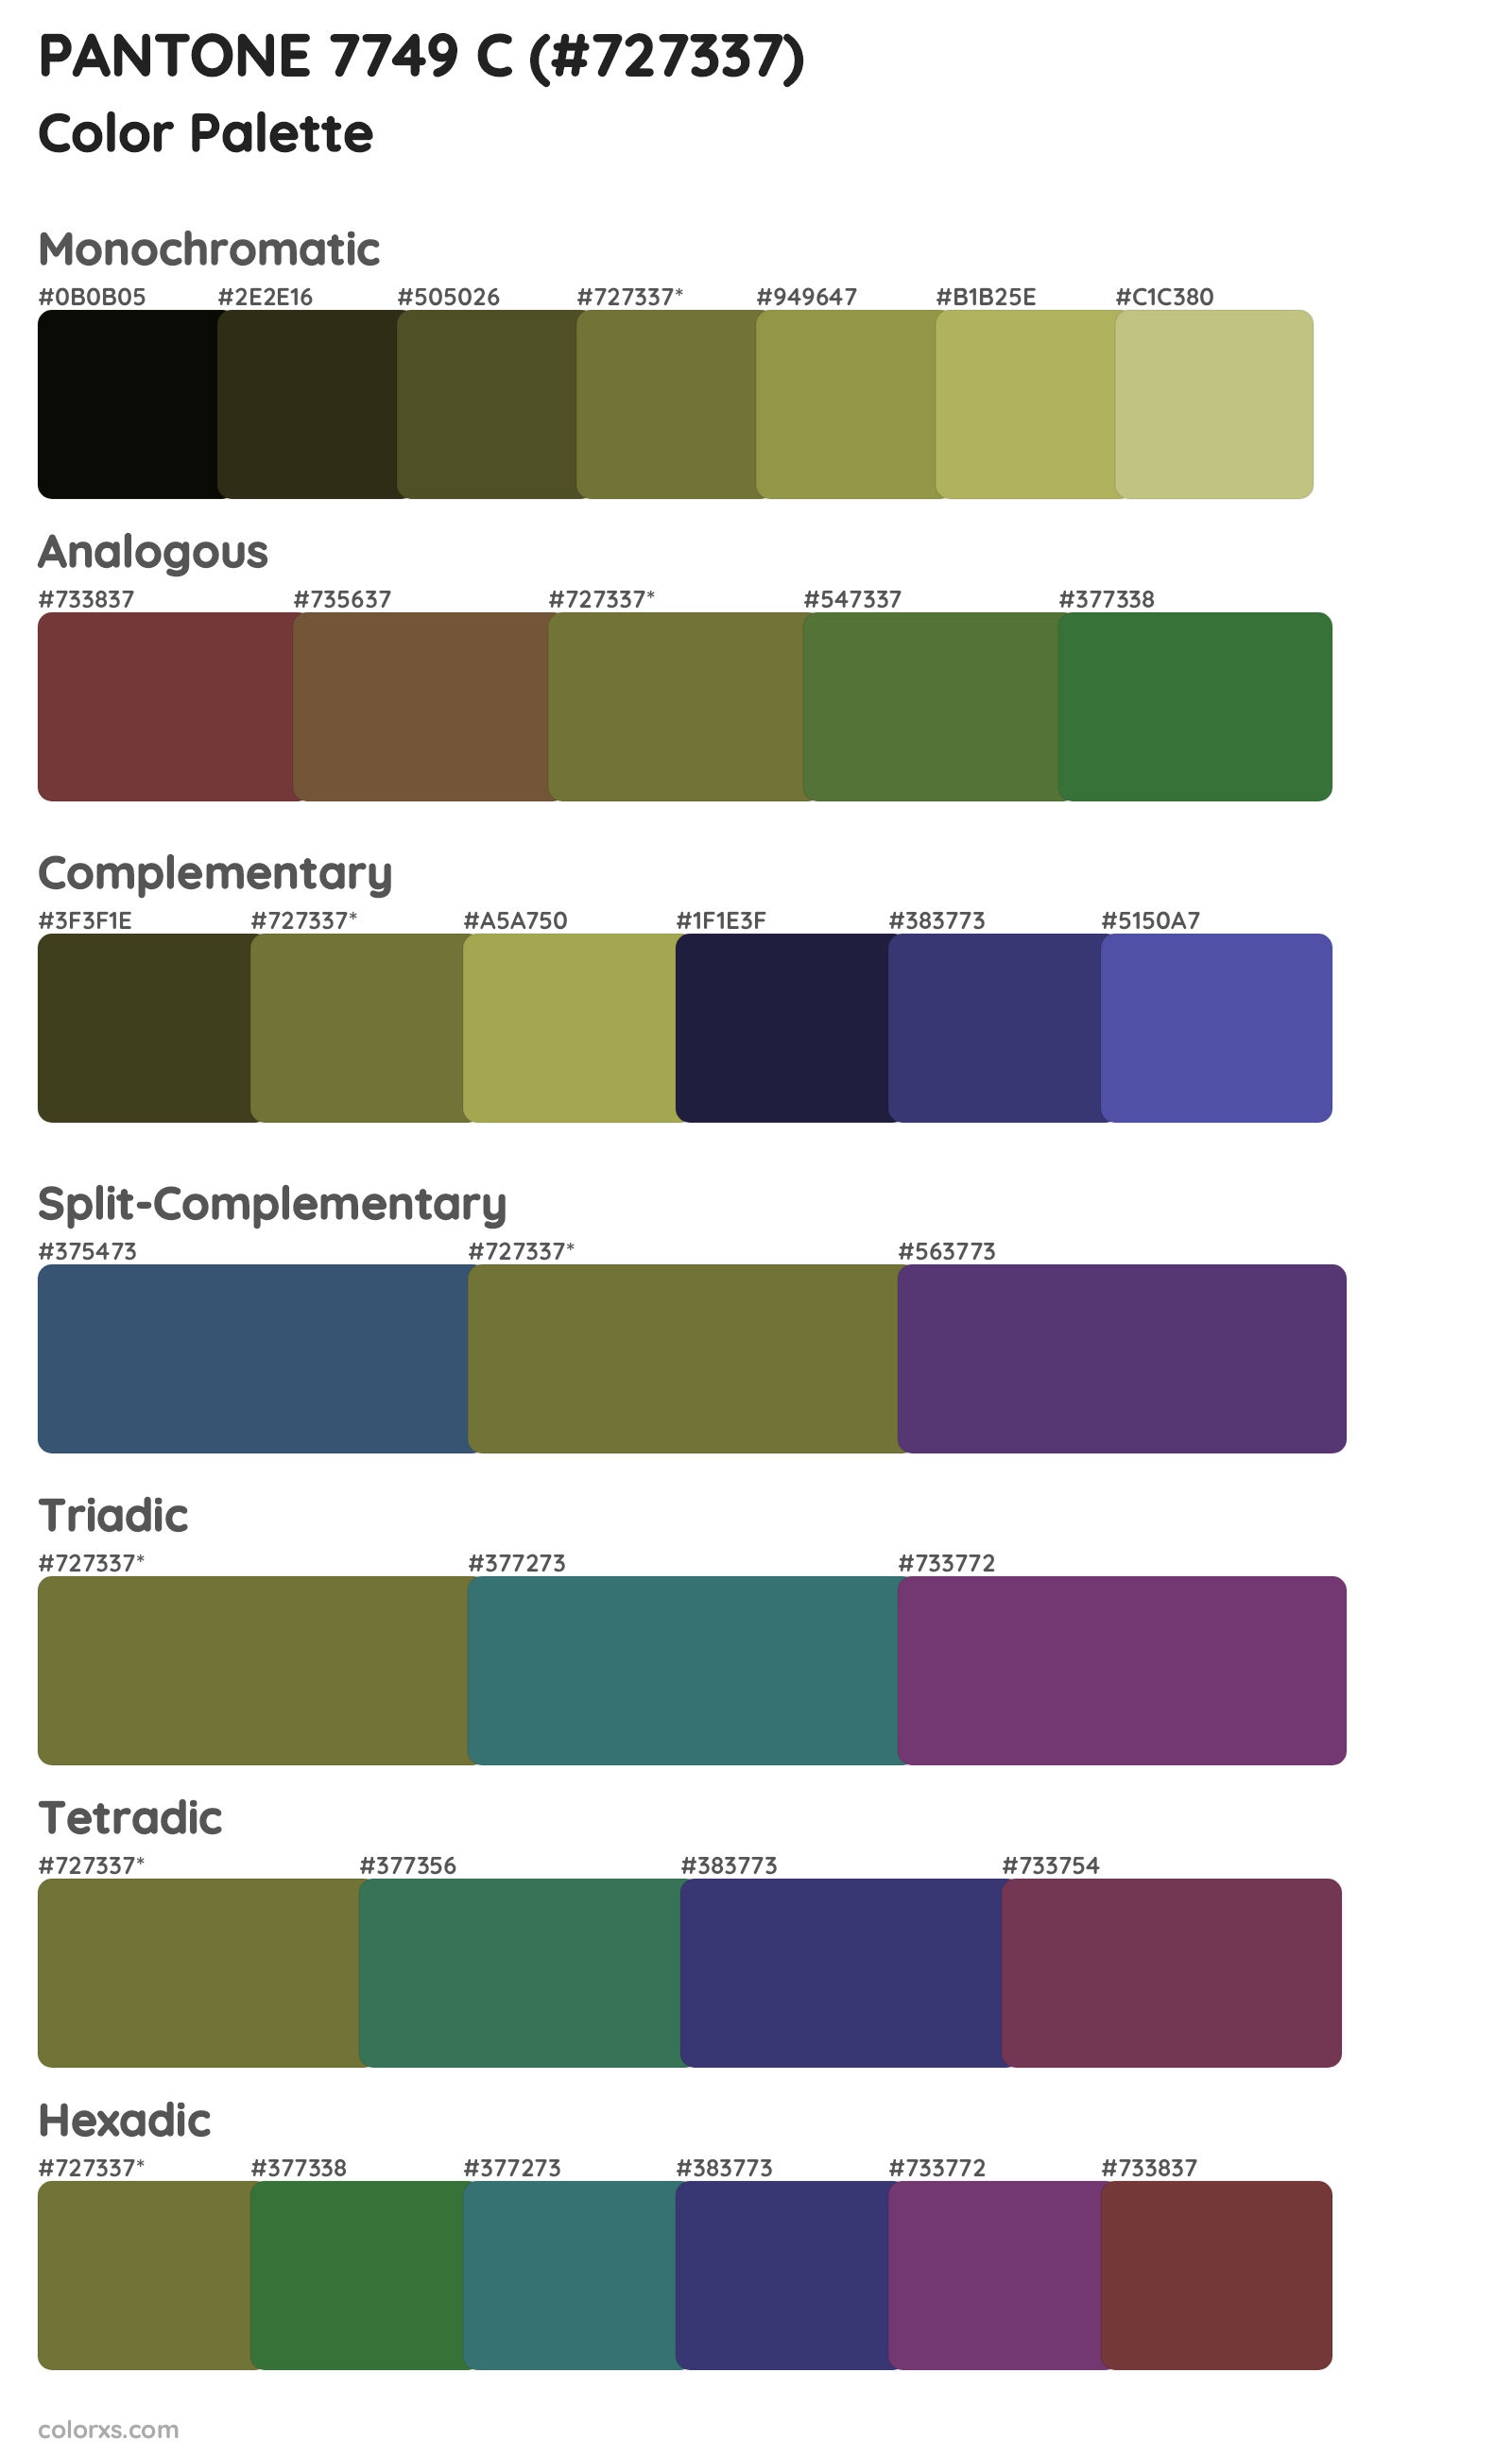 PANTONE 7749 C Color Scheme Palettes